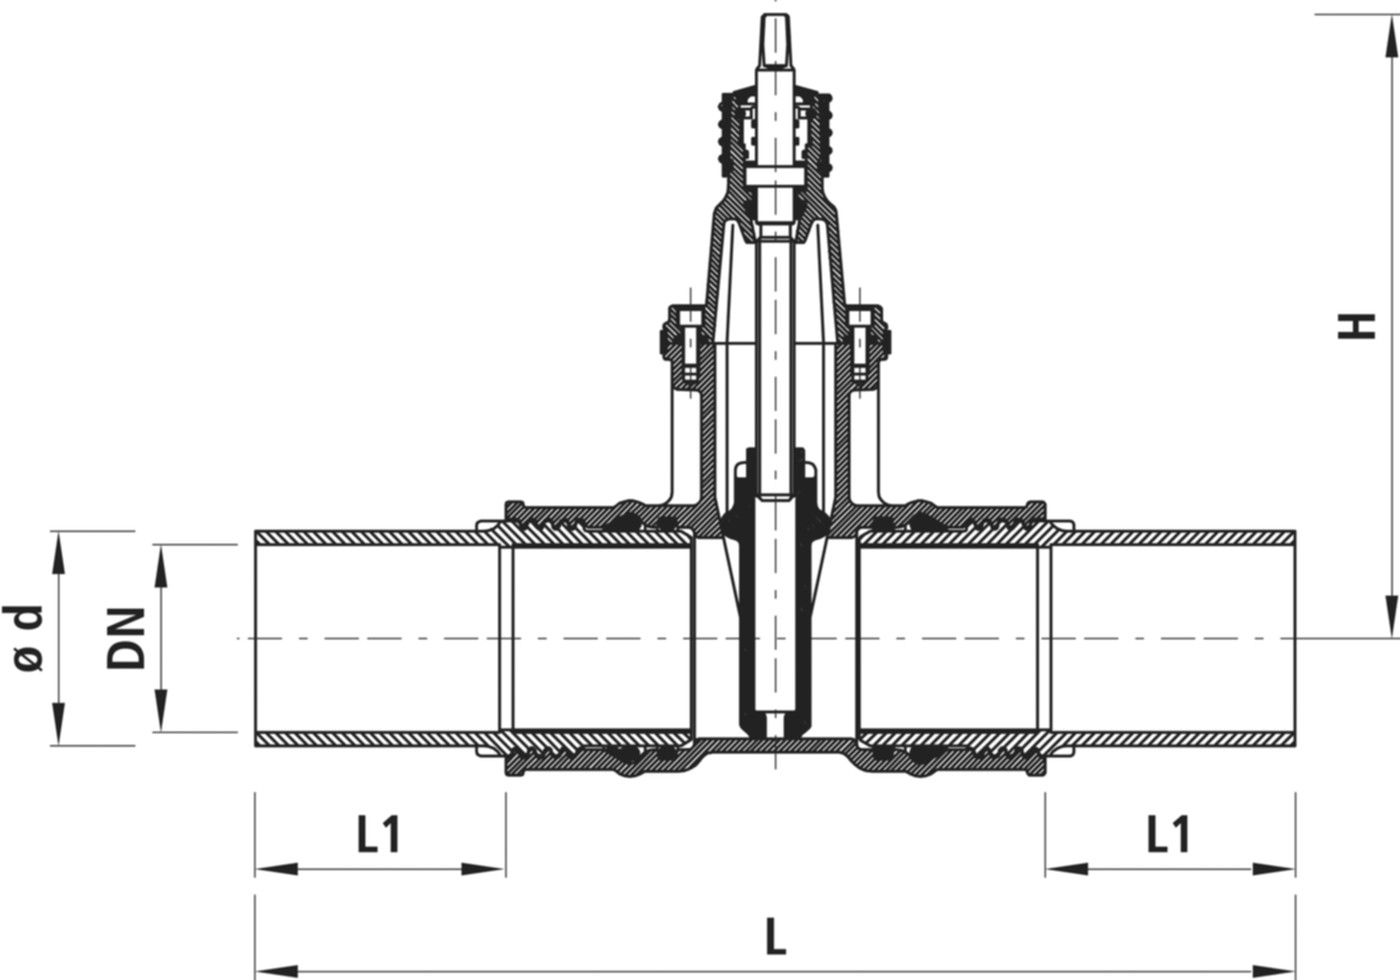 Einschweiss-Schieber für Gas 4815 DN 100 / d 125mm - Hawle Armaturen